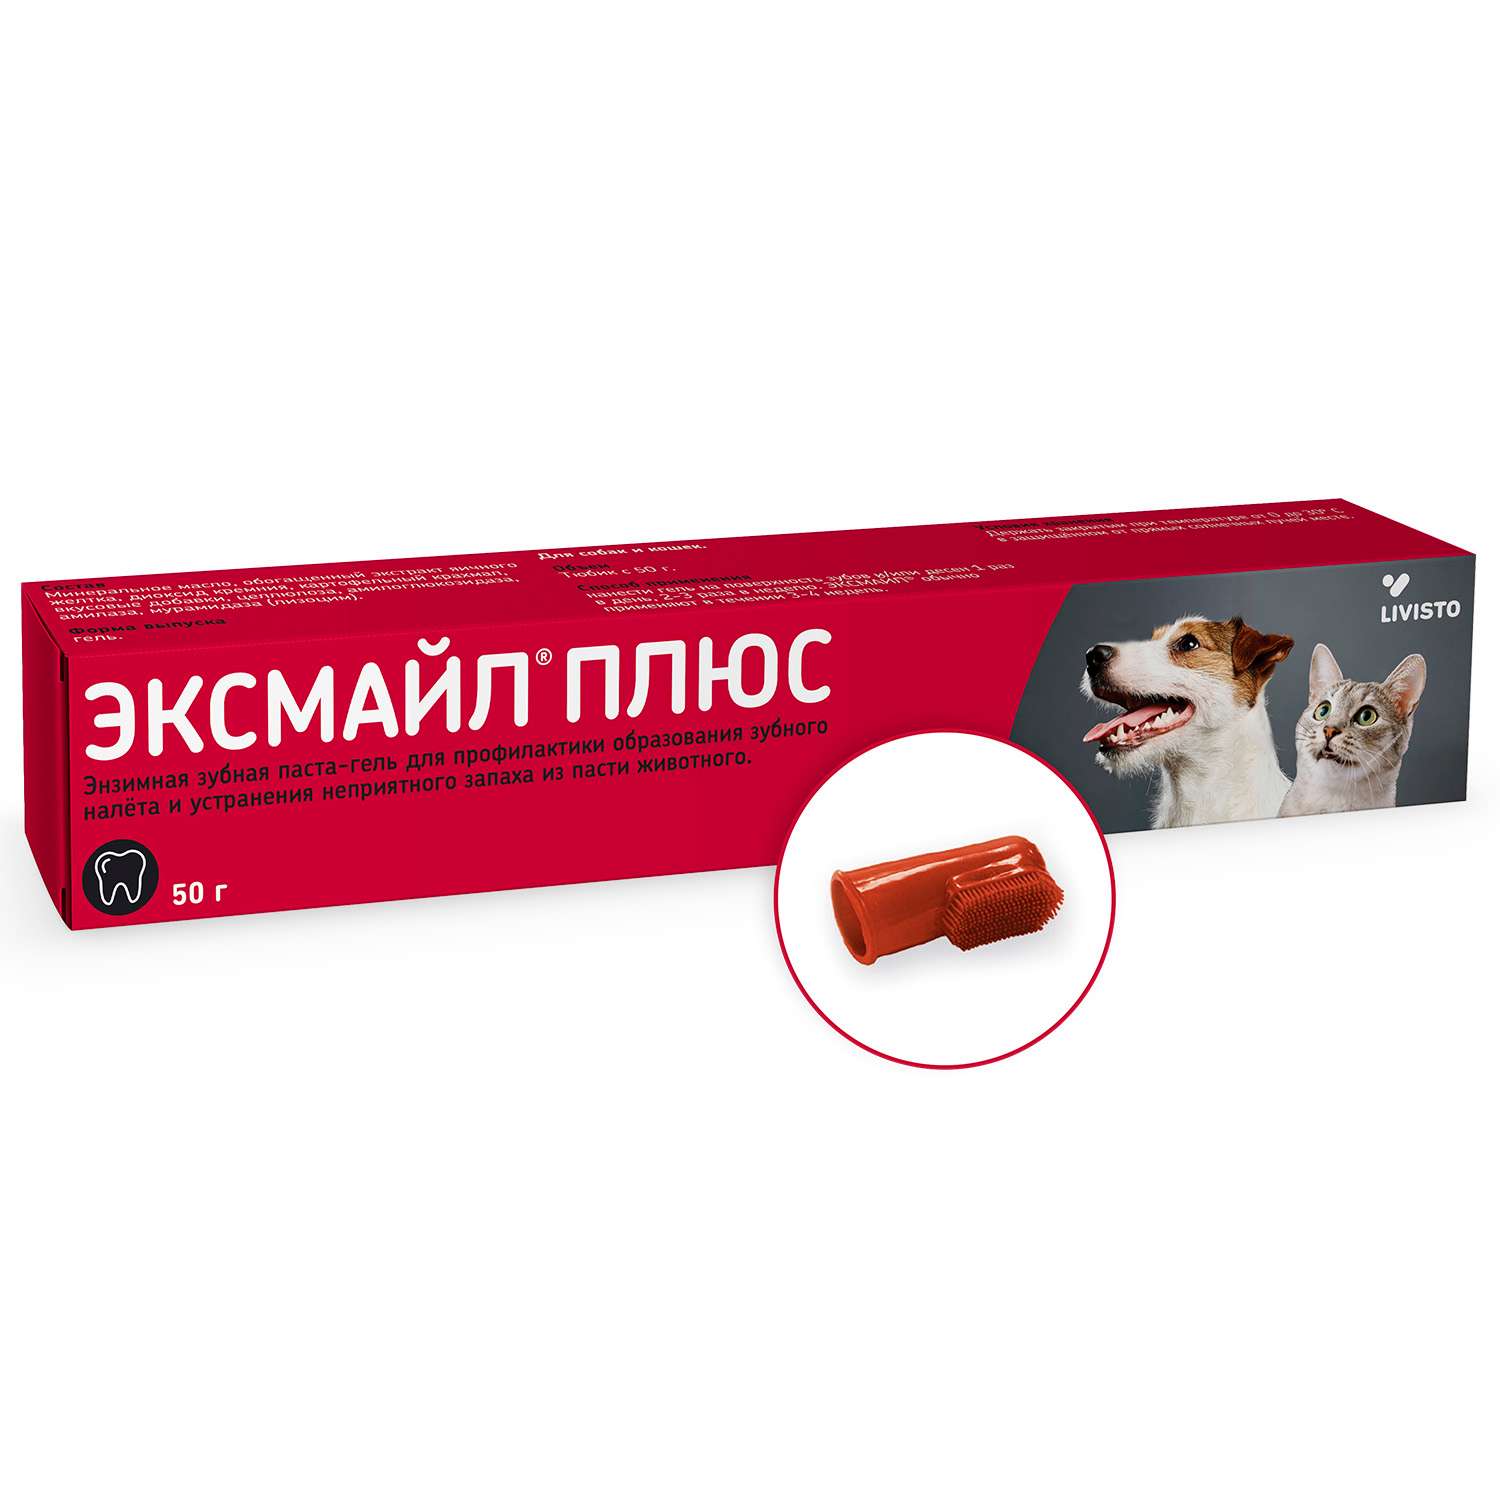 Паста зубная для собак и кошек Livisto Эксмайл Плюс 50г - фото 2